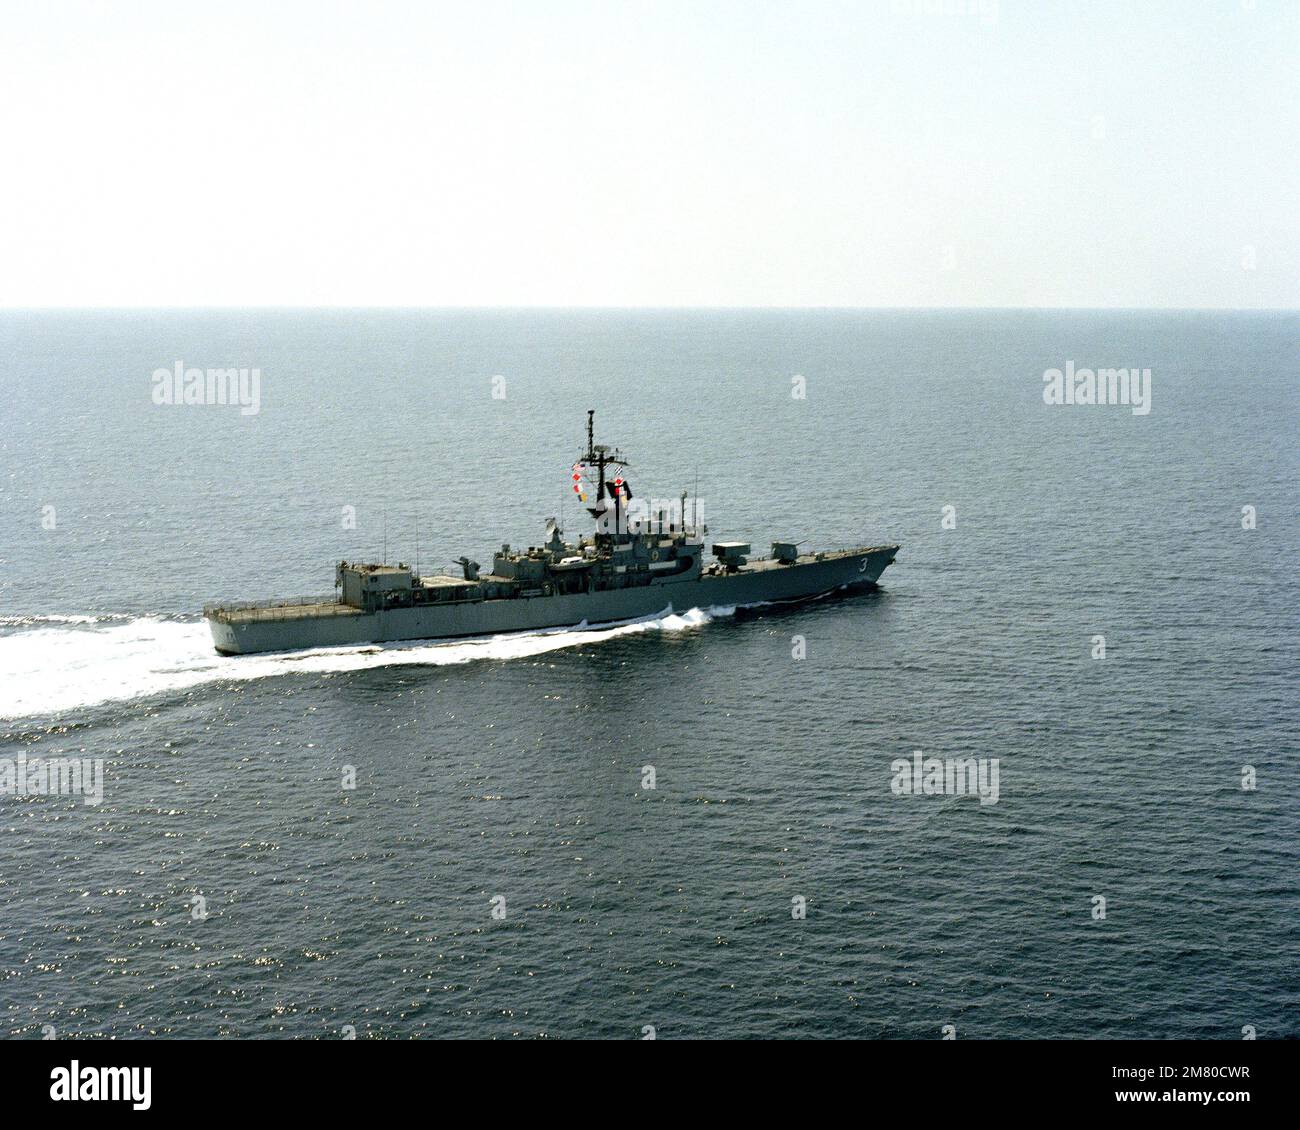 Une vue à tribord de la frégate de missiles guidés USS SCHOFIELD (FFG 3) est en cours. Pays : inconnu Banque D'Images